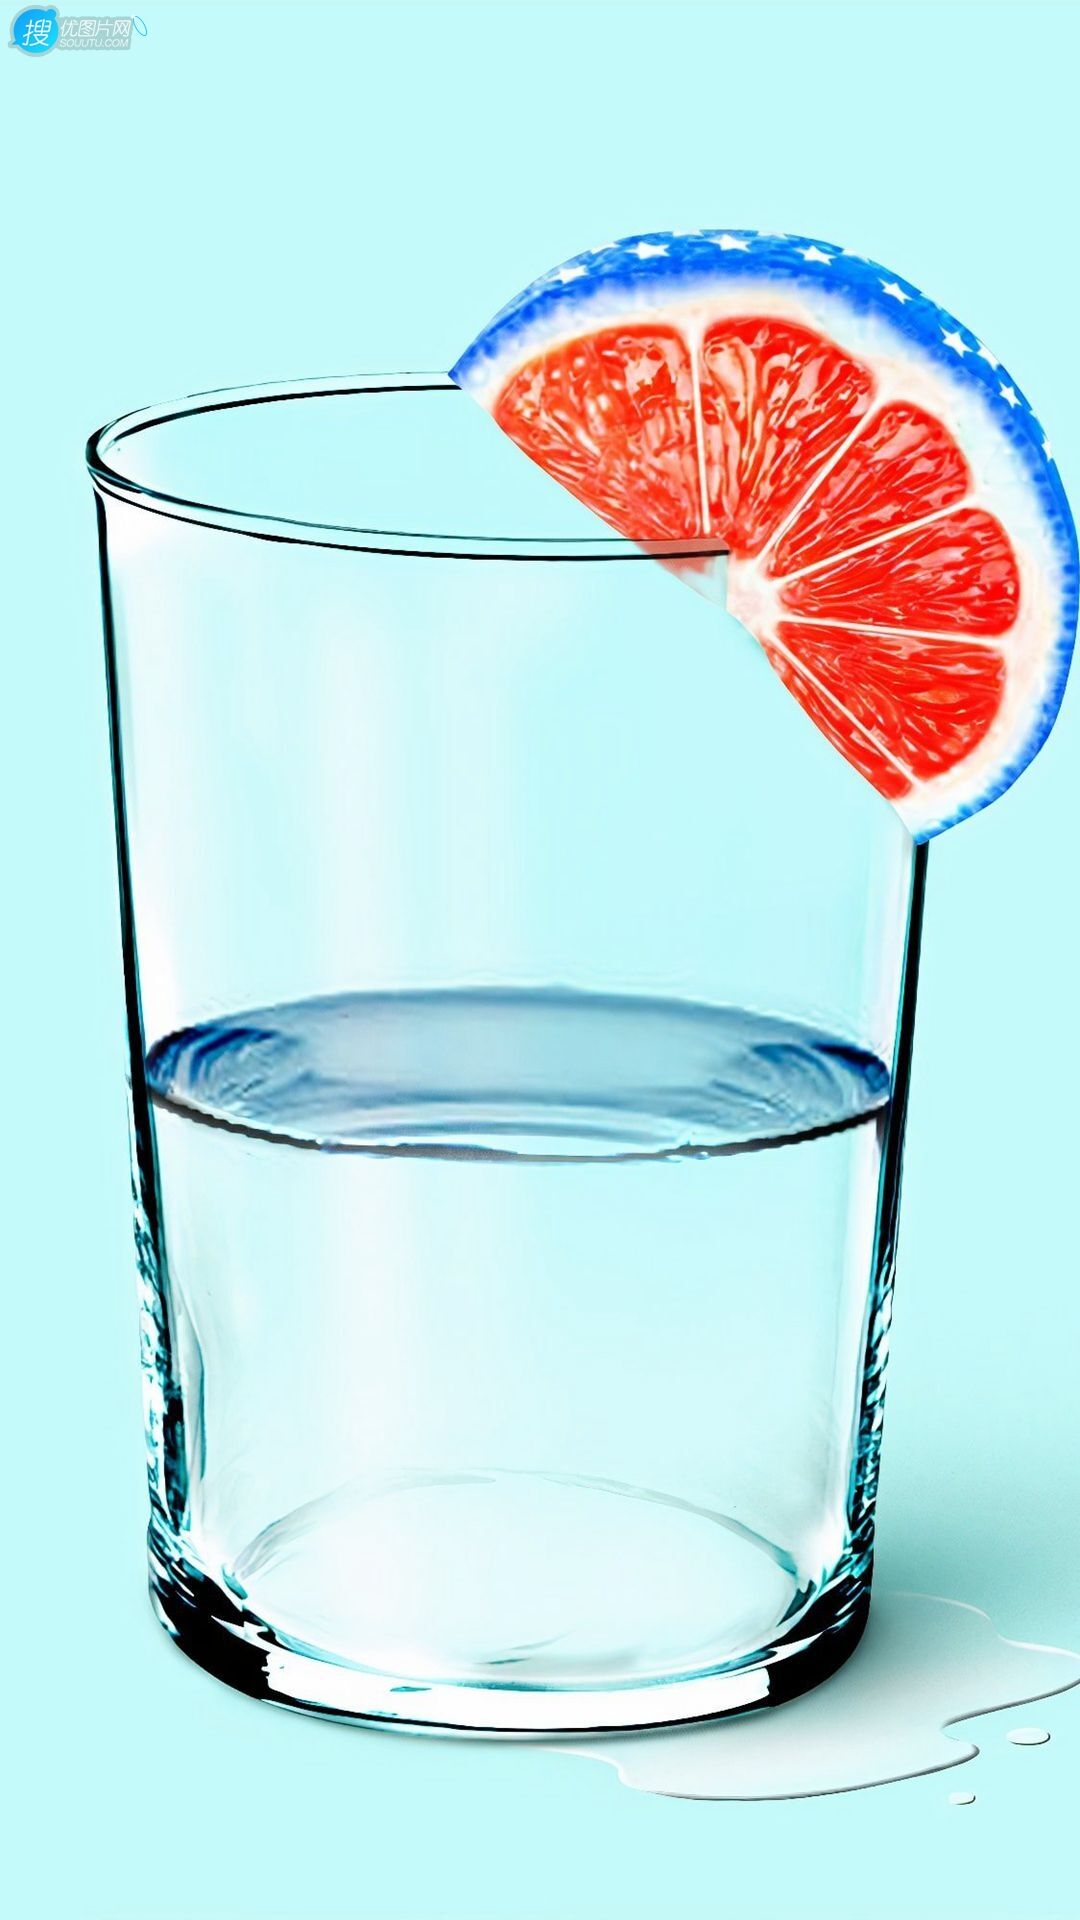 玻璃杯，半杯水，橙片，蓝色小清新养眼手机壁纸图片